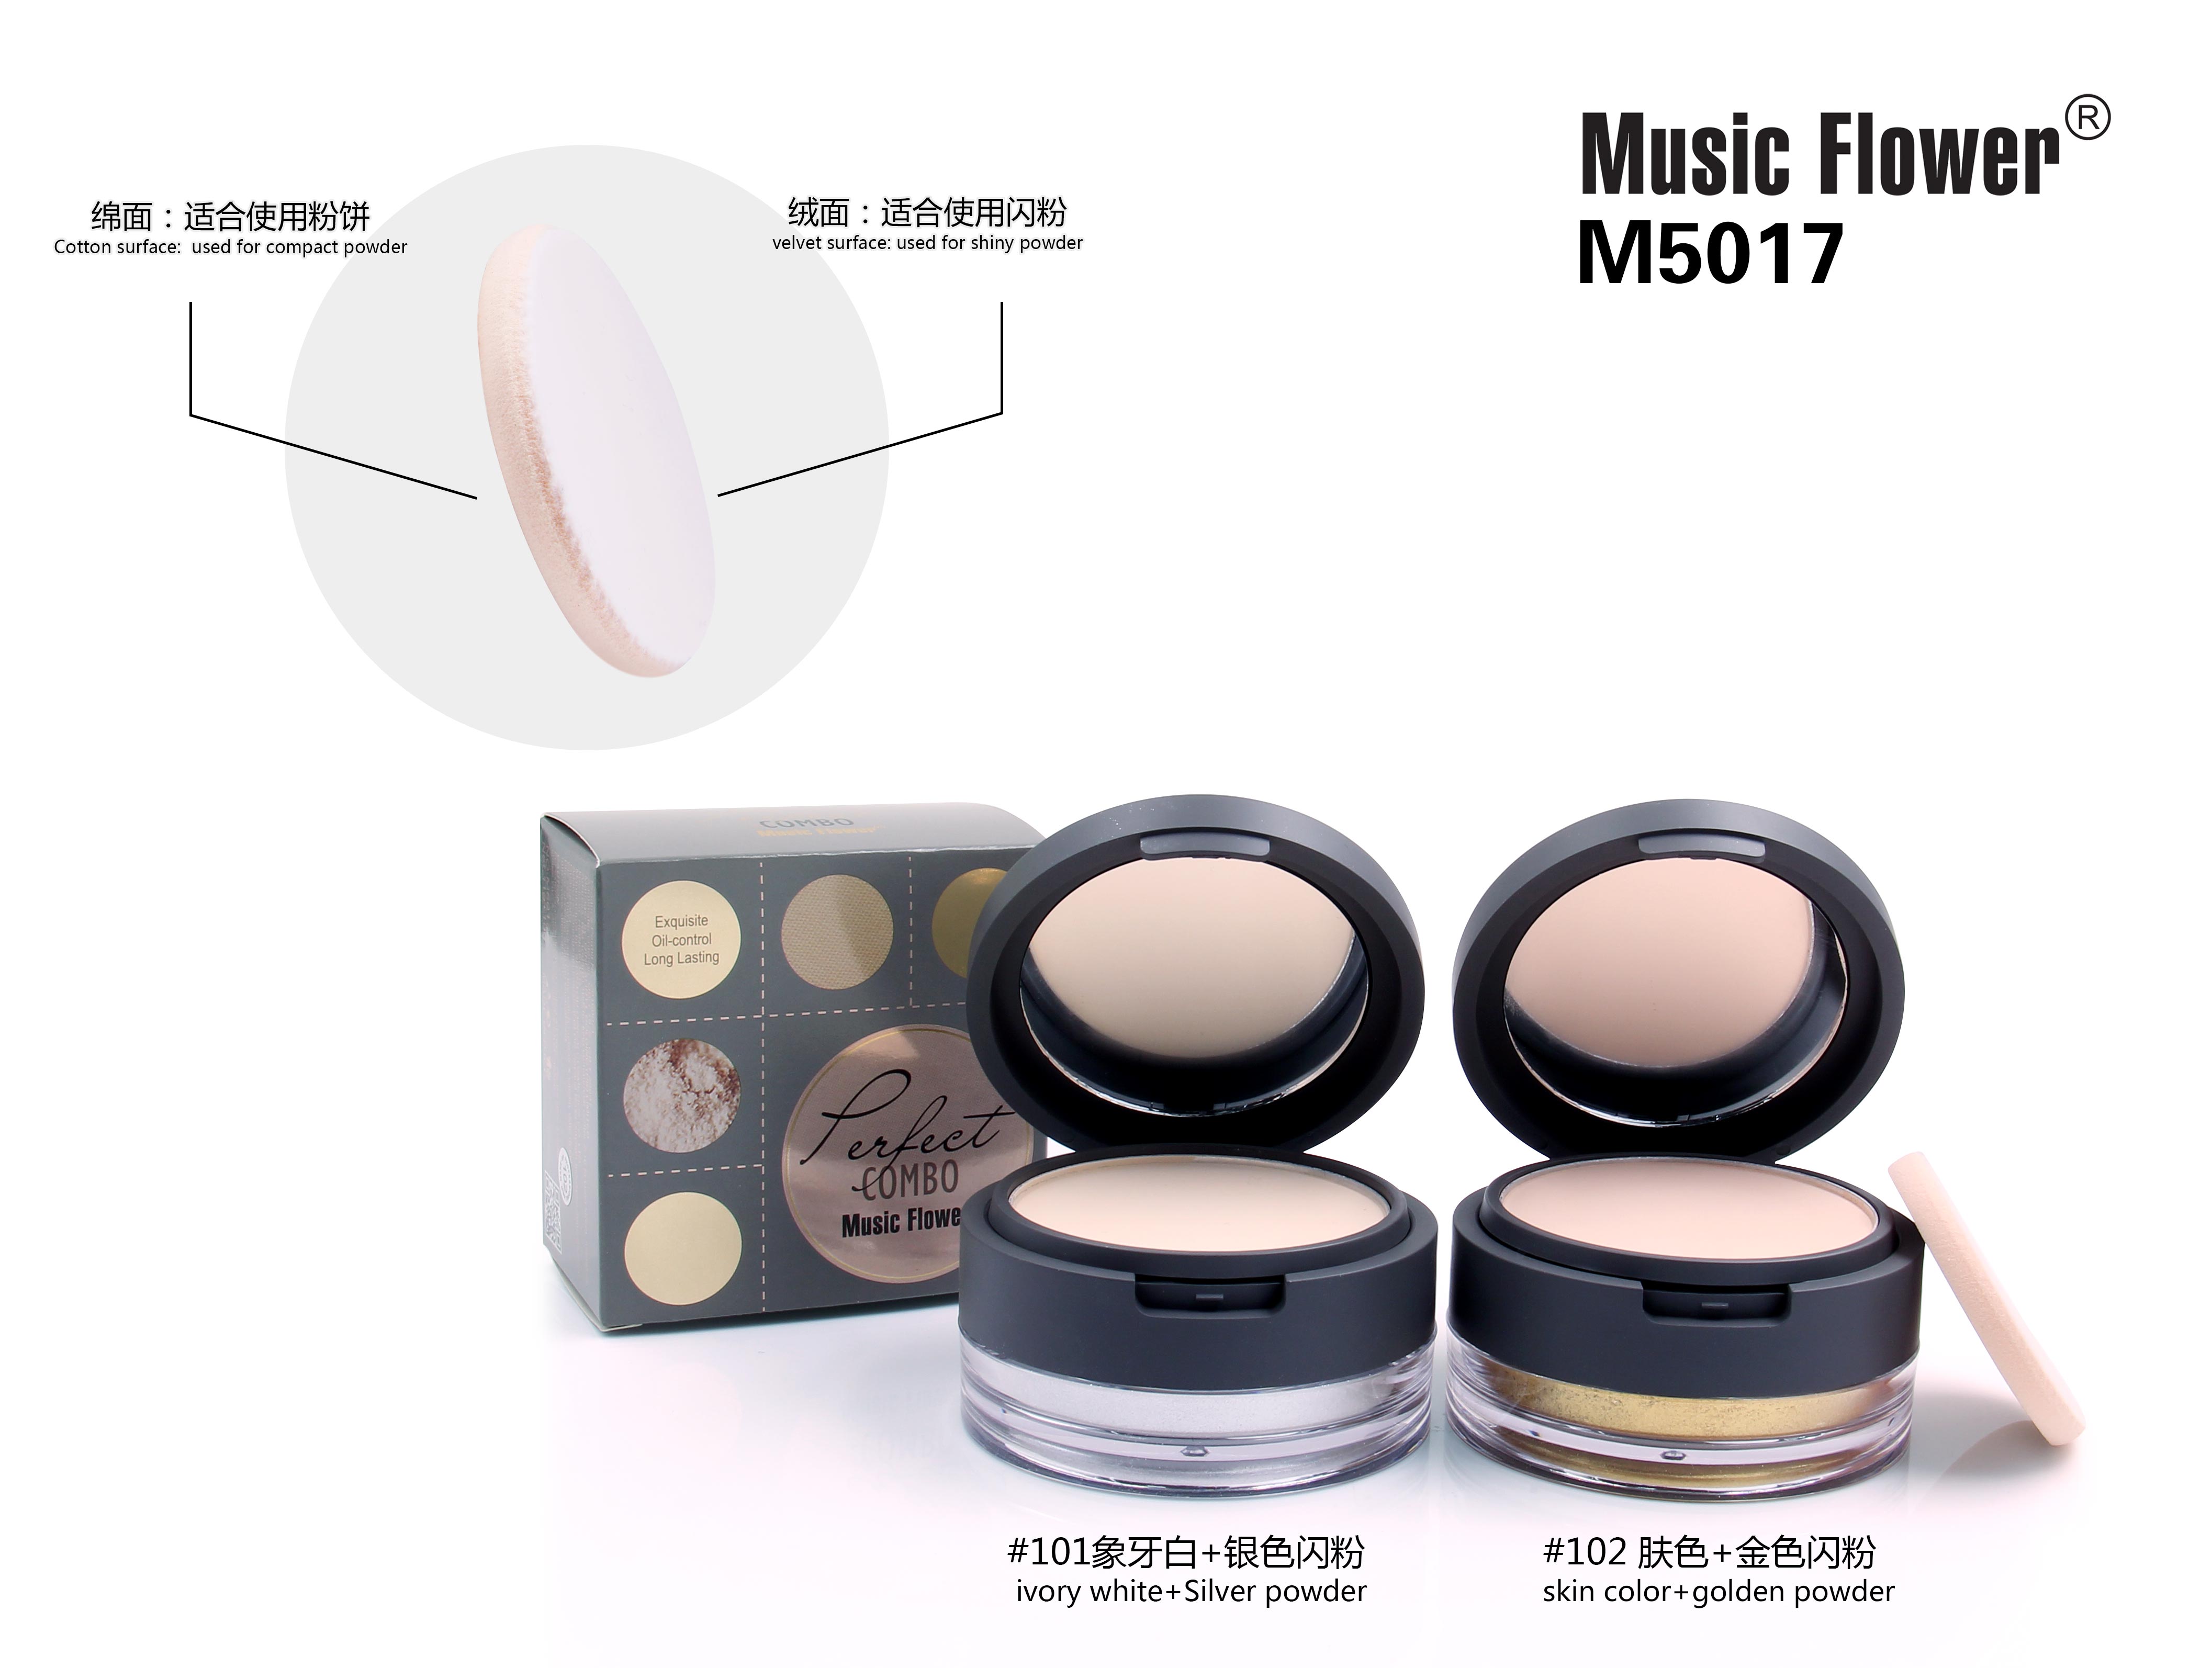 MUSIC FLOWER COMPACT POWDER+SHINY POWDER M5017